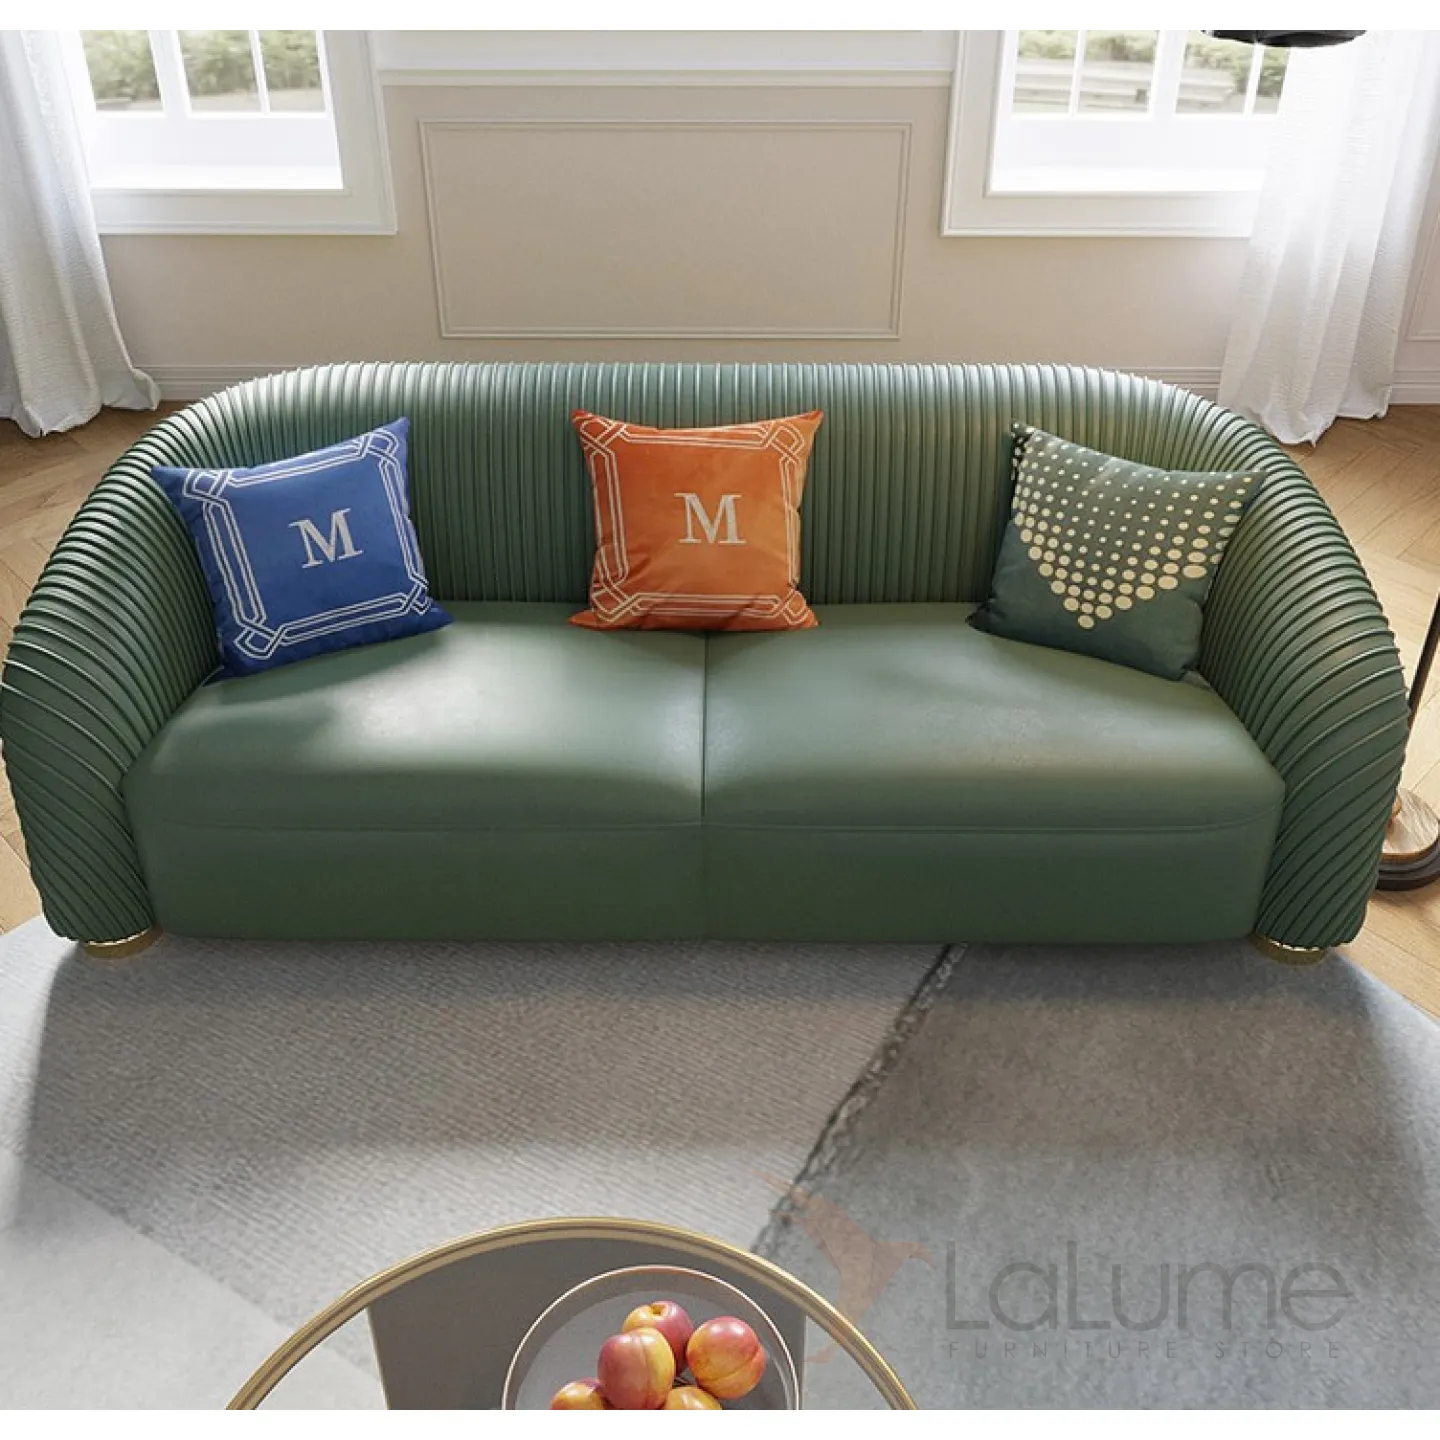 ✓ Купить кожаный диван в итальянском стиле LaLume MB20990-23 по бюджетнымценам, только в магазине LaLume